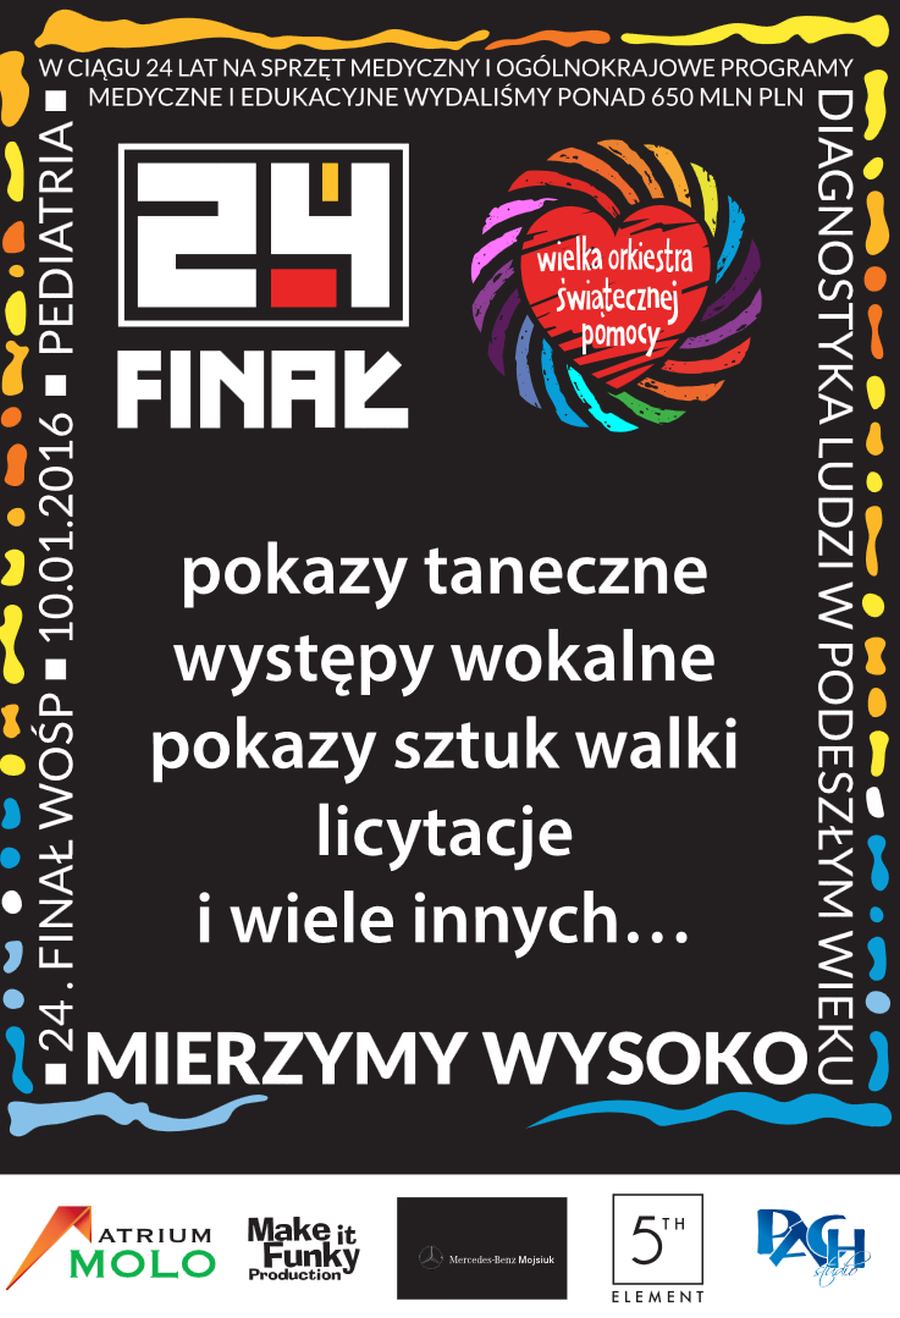 10.01.2016 24 Finał Wielkiej Orkiestry Świątecznej Pomocy - Galeria Gryf w Szczecinie